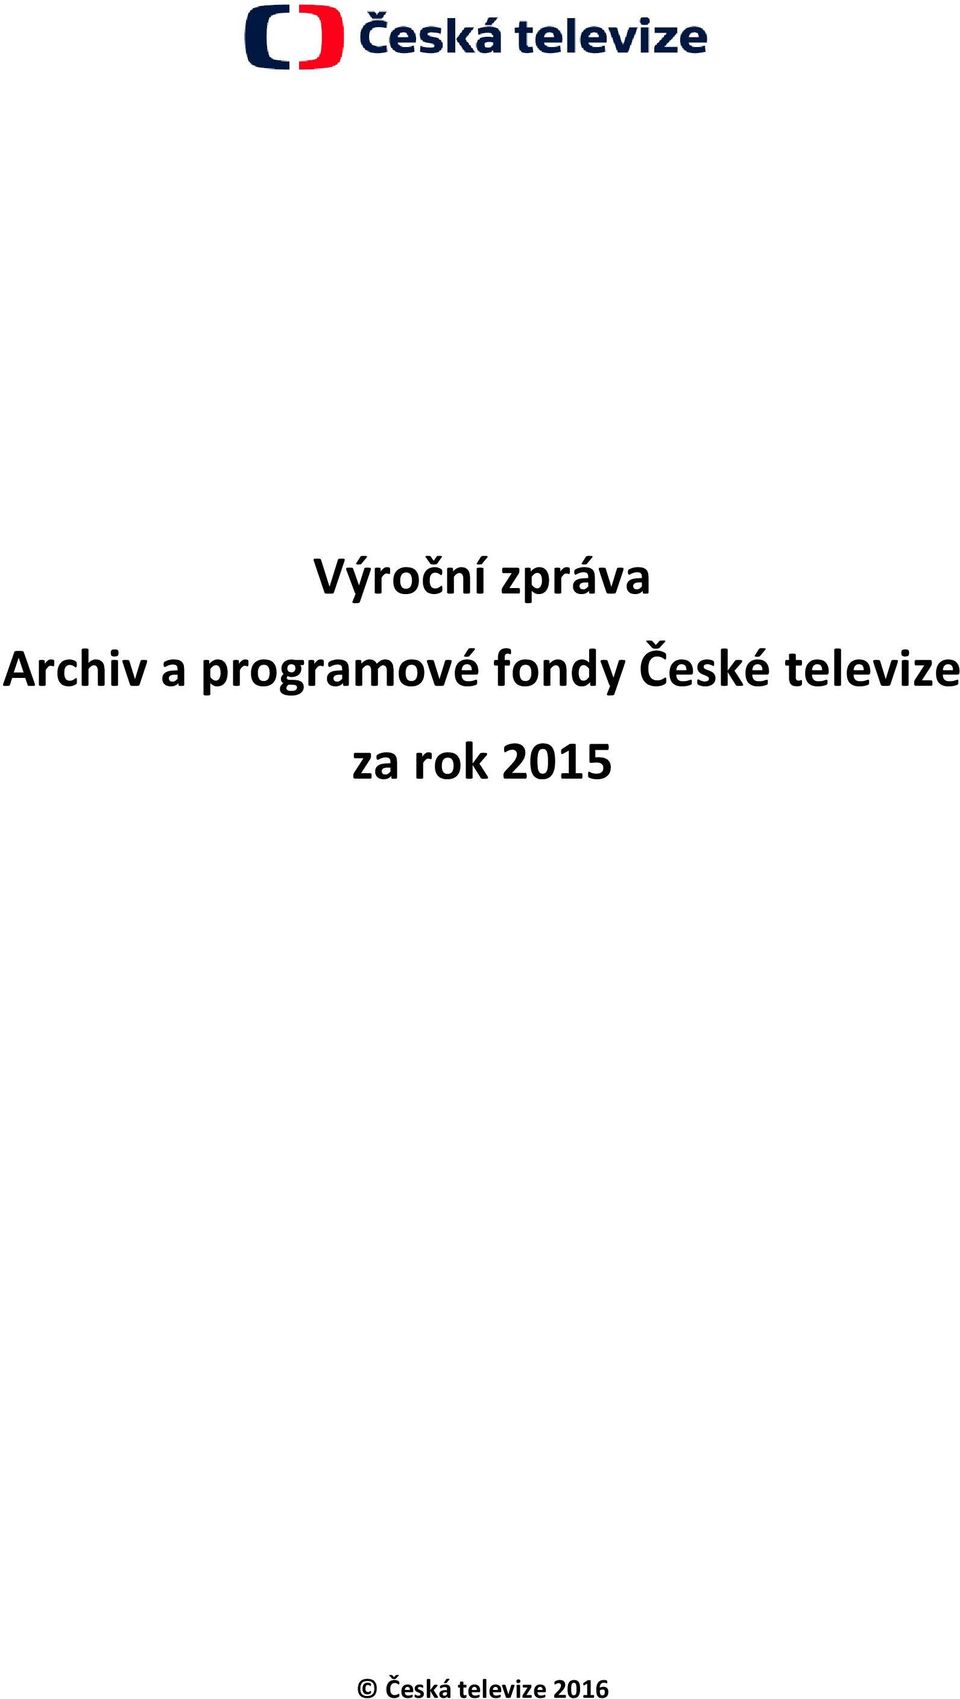 České televize za rk